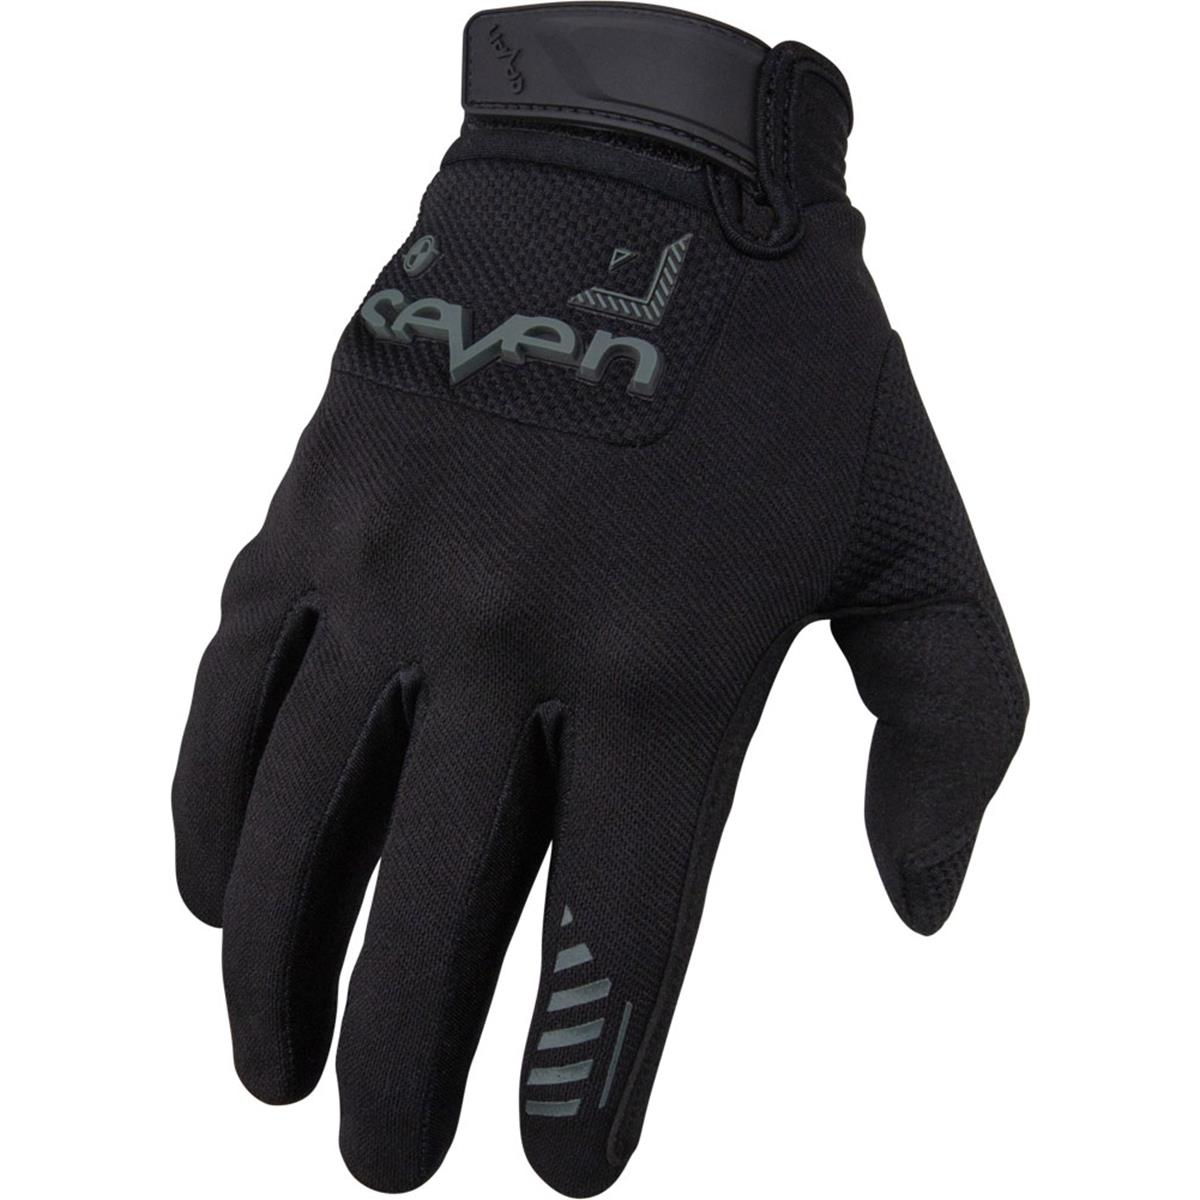 Seven MX Gloves Endure Avid Black/Black